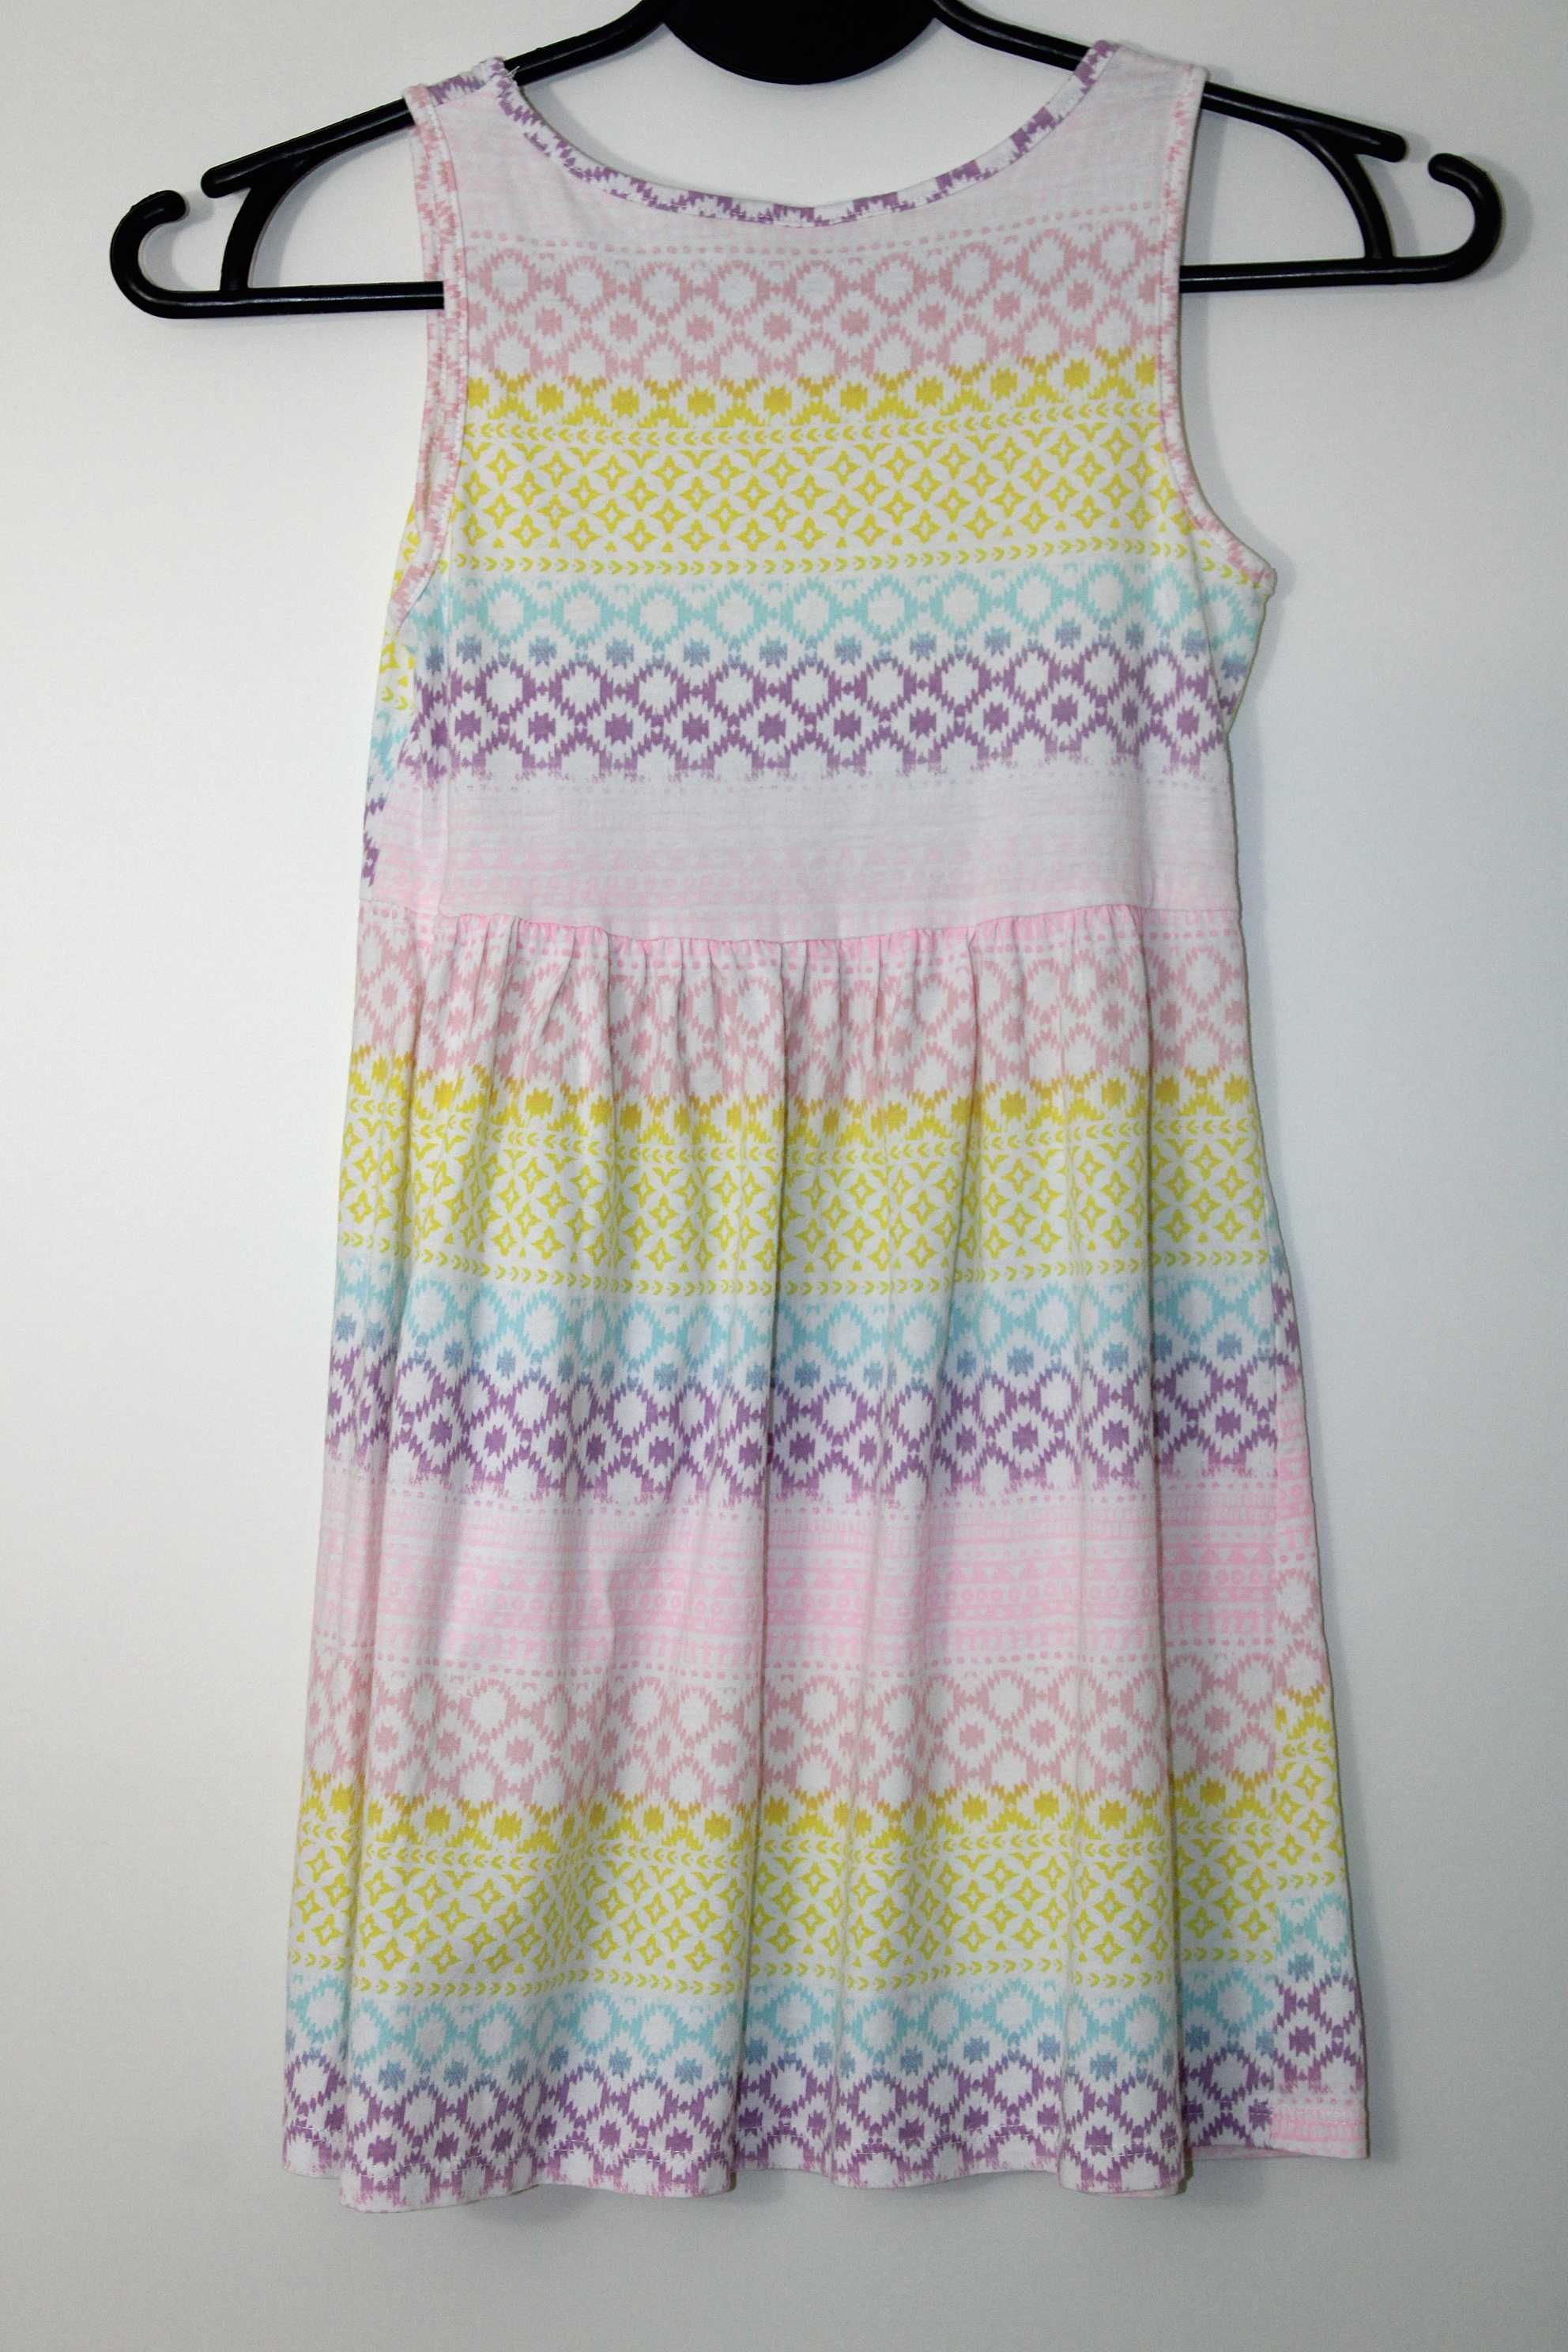 z5 H&M Bawełniana Kolorowa Sukienka 122/128 6-8 lat